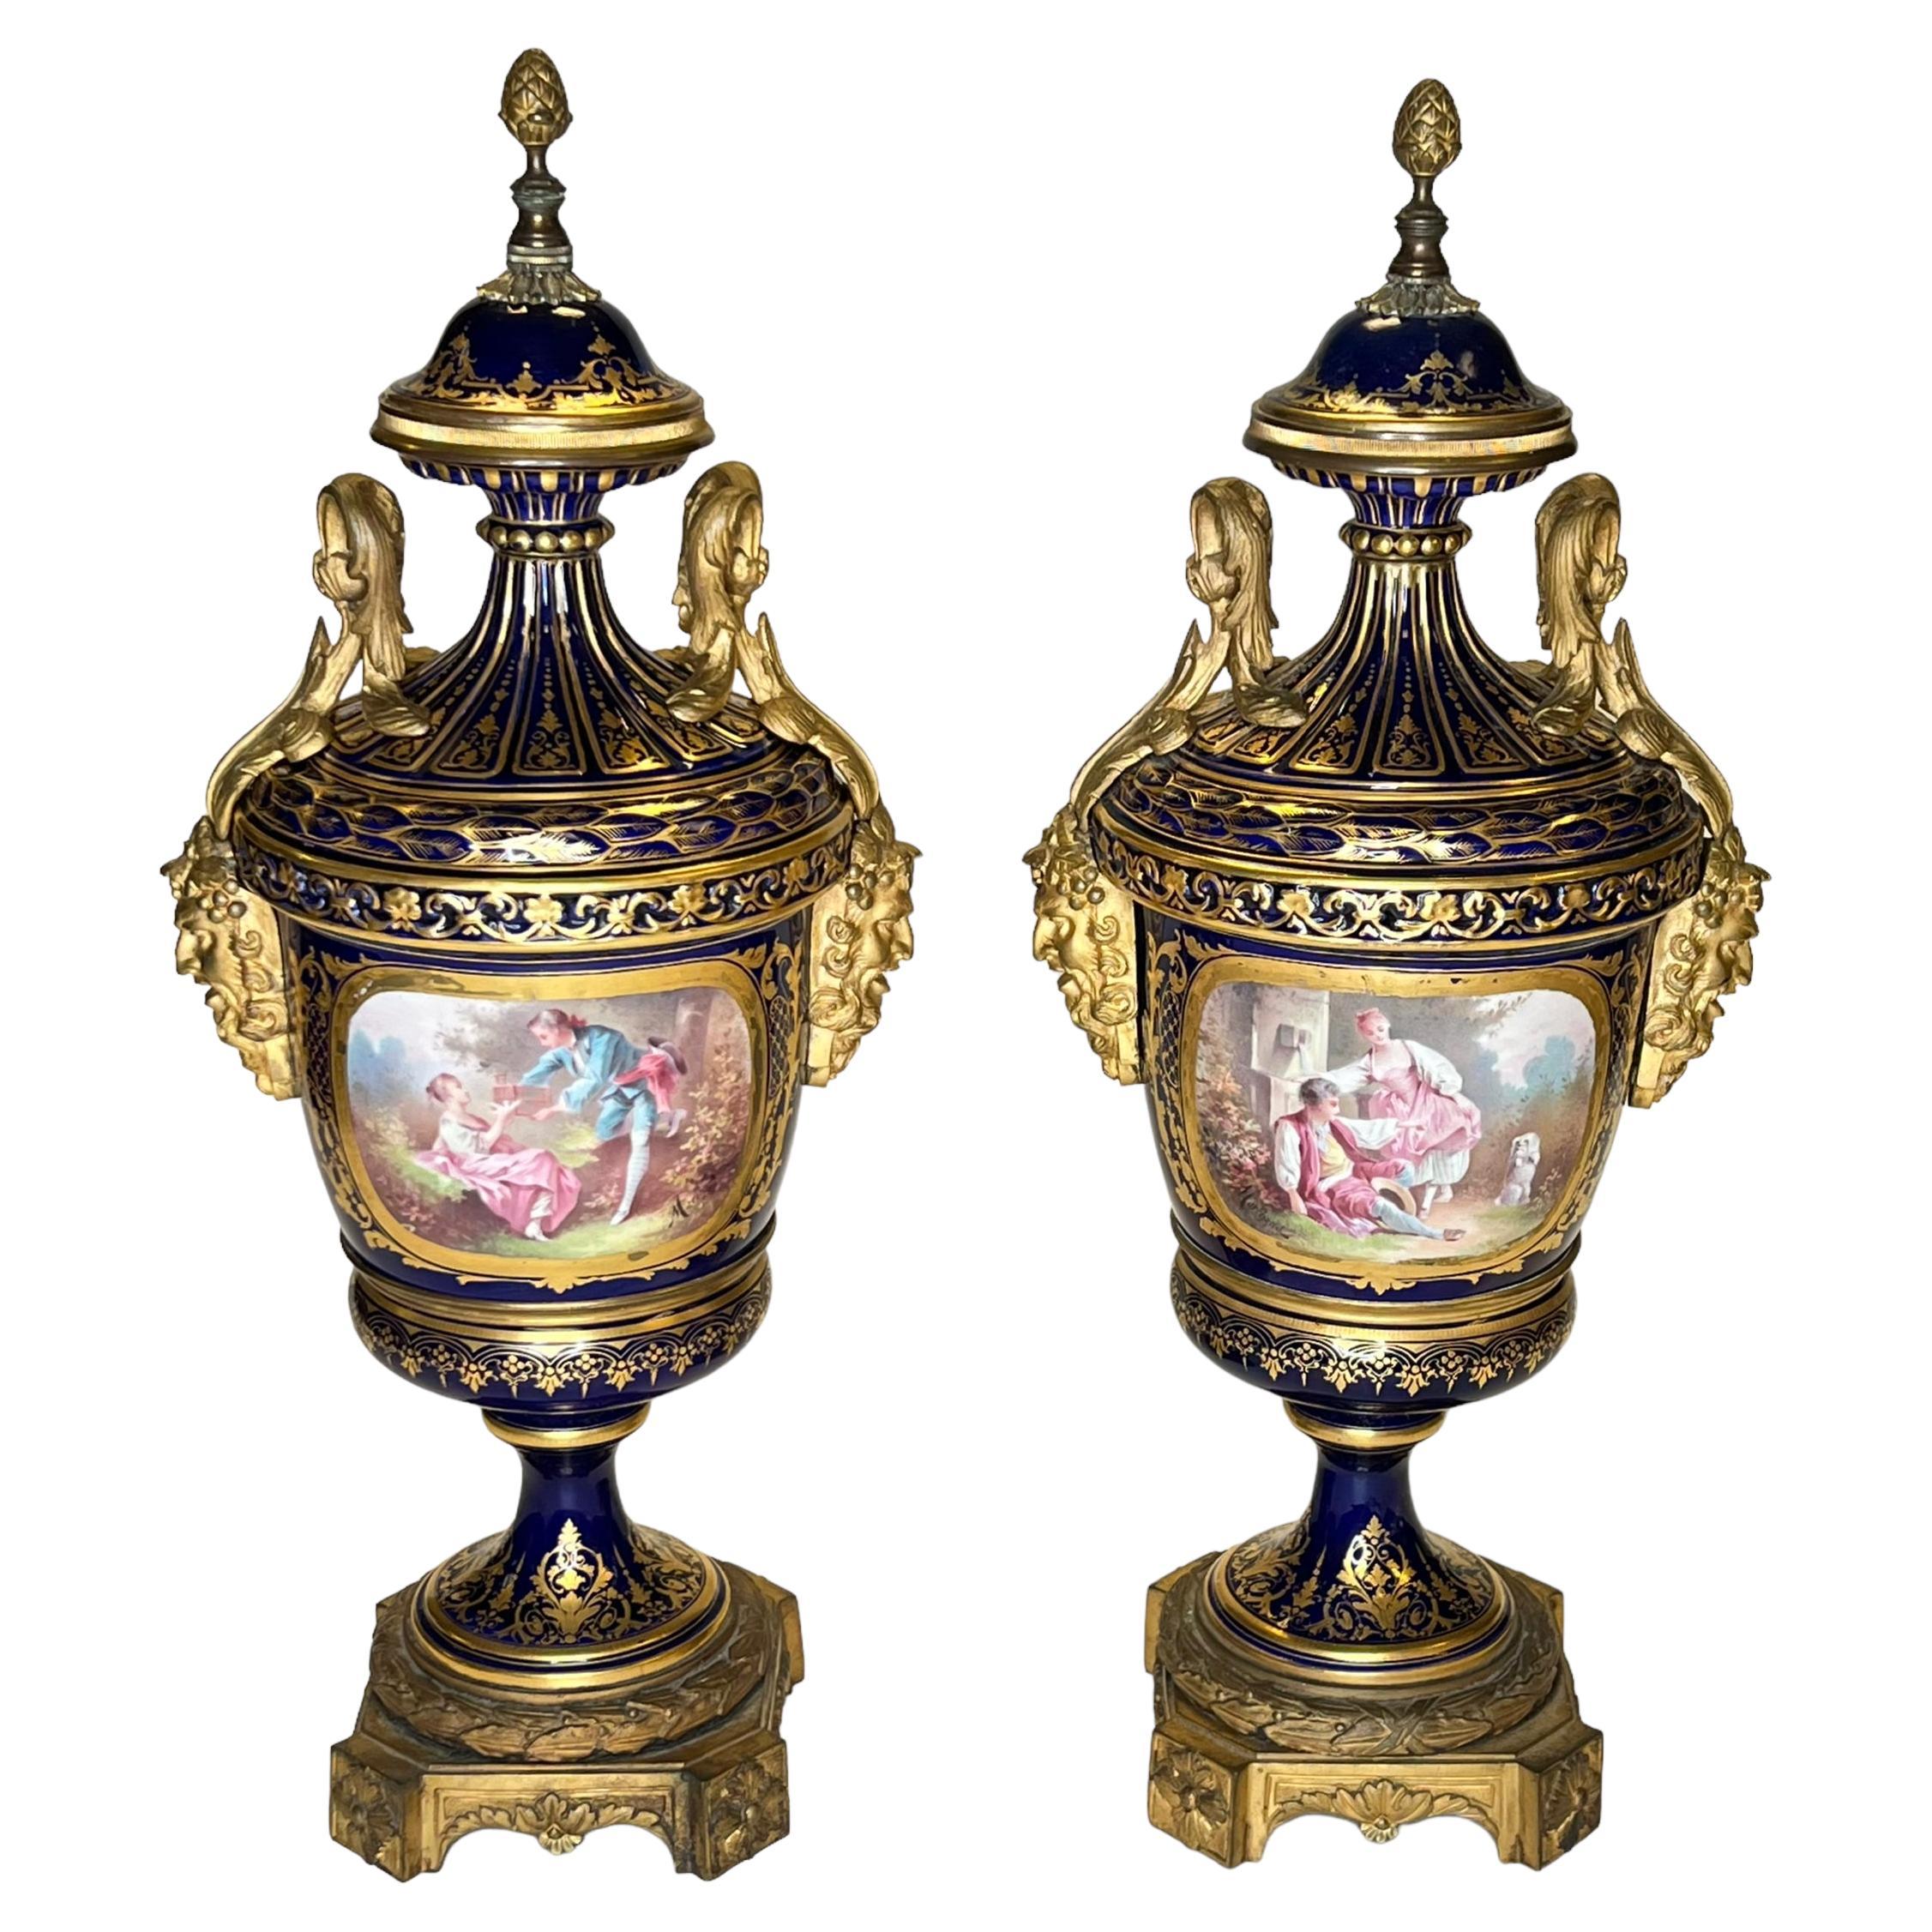 Paire d'urnes montées en bronze doré de style Sèvres du 19ème siècle dans le style Louis XVI